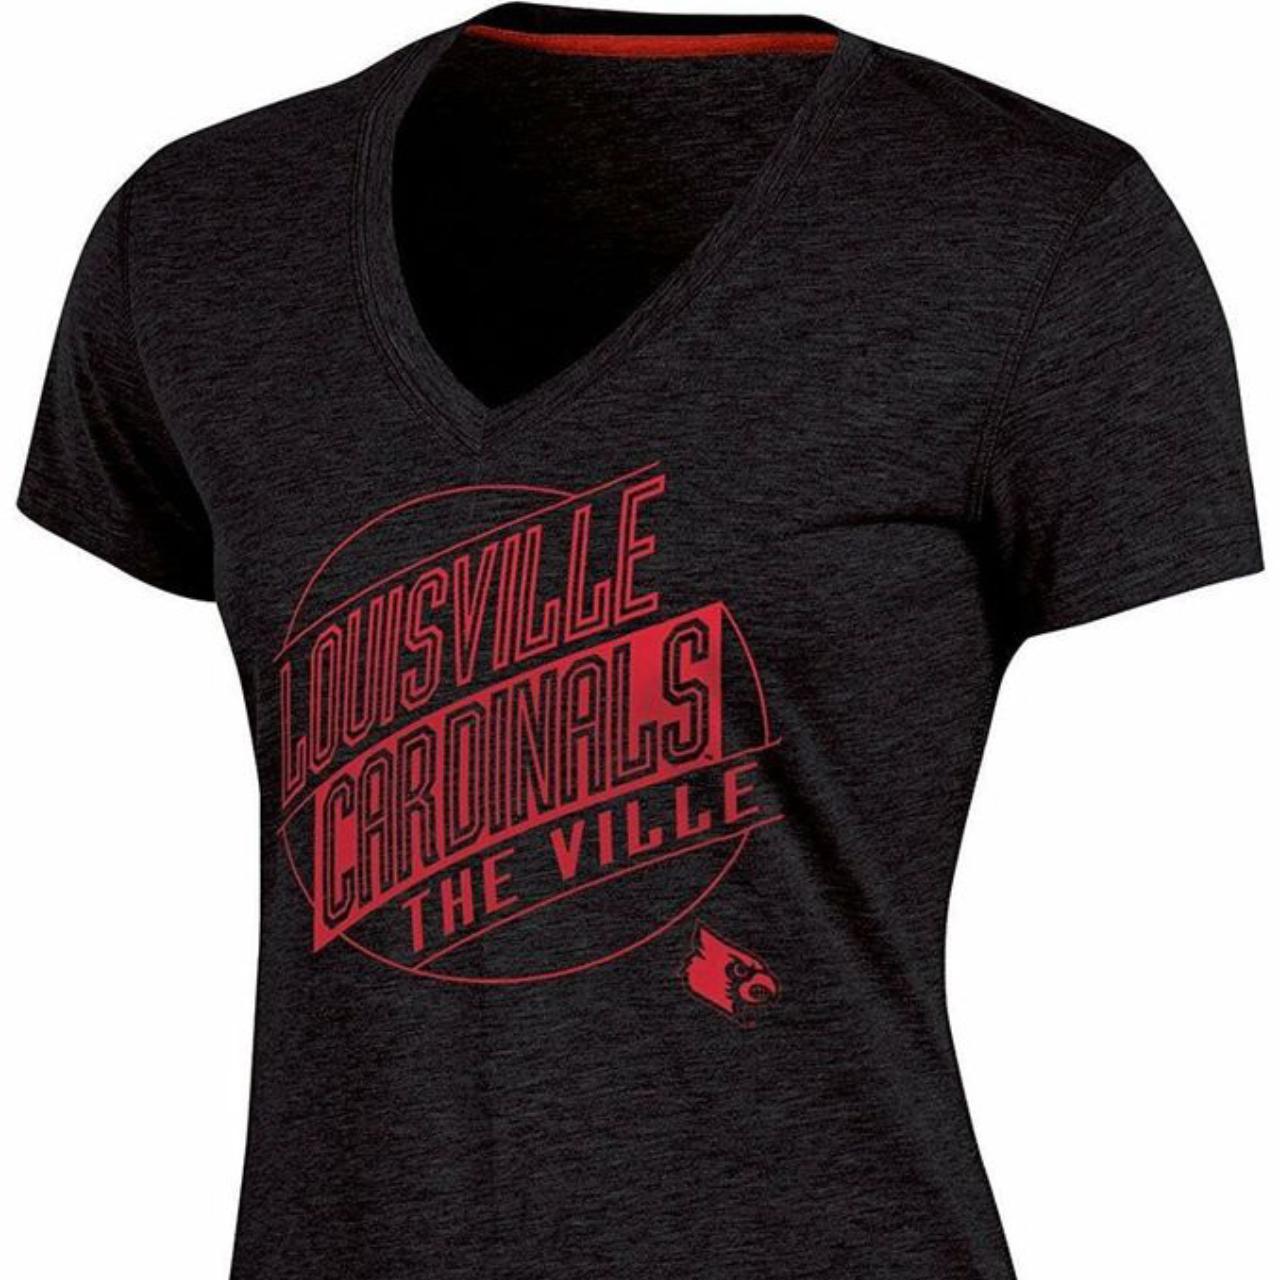 Vintage Louisville Cardinals t shirt Light wear - Depop